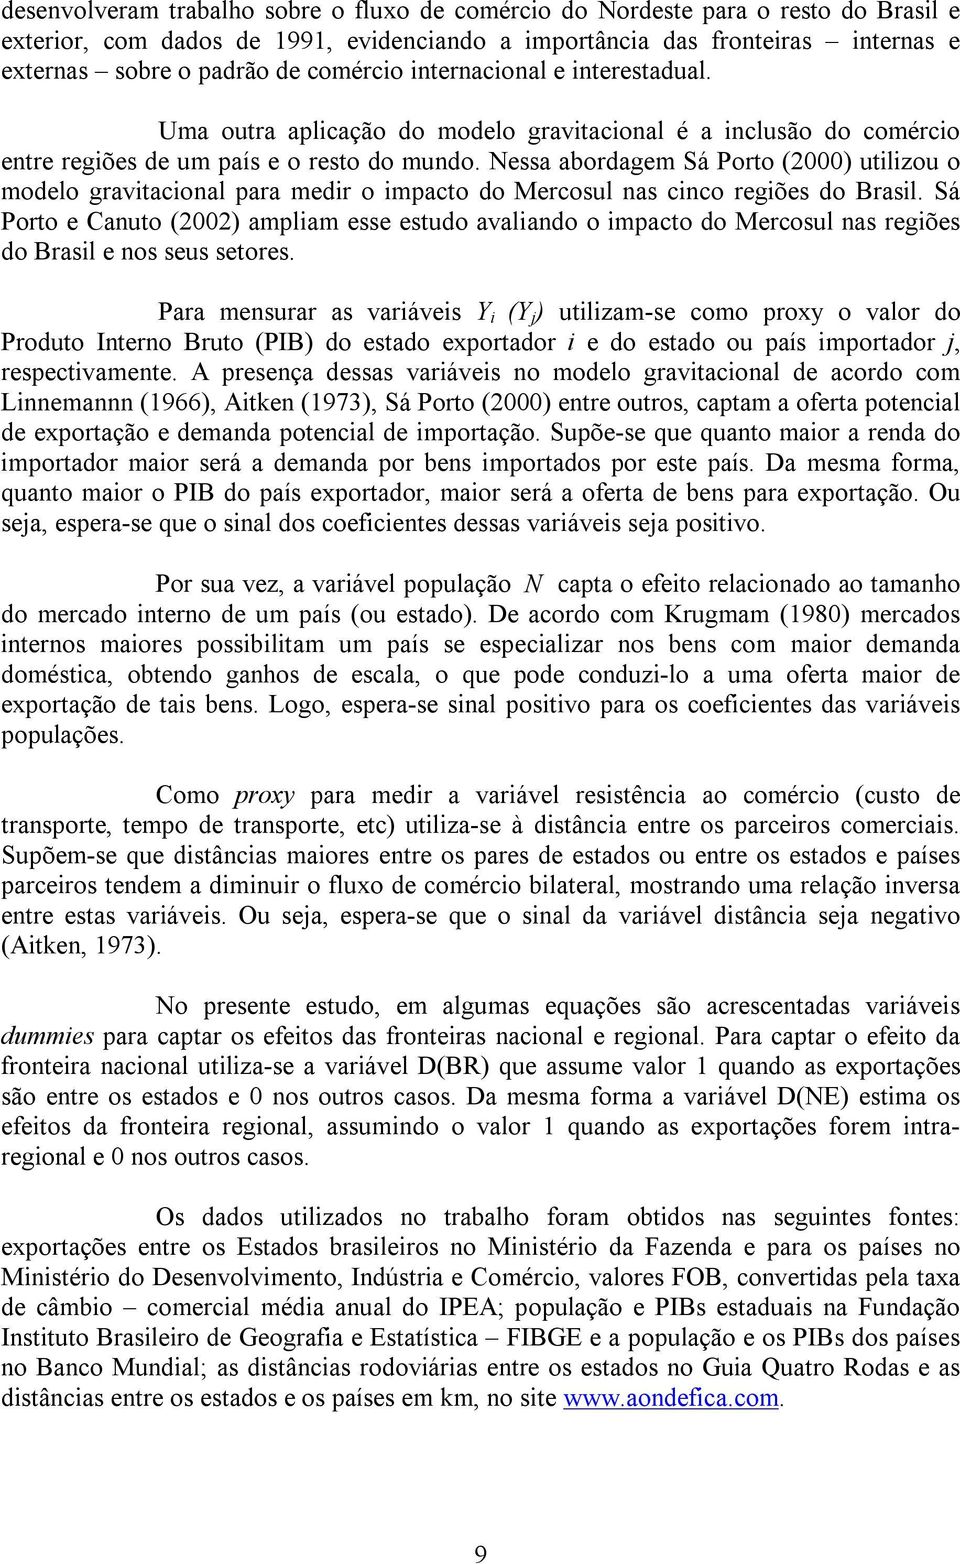 Nessa abordagem Sá Porto (2000) utilizou o modelo gravitacional para medir o impacto do Mercosul nas cinco regiões do Brasil.